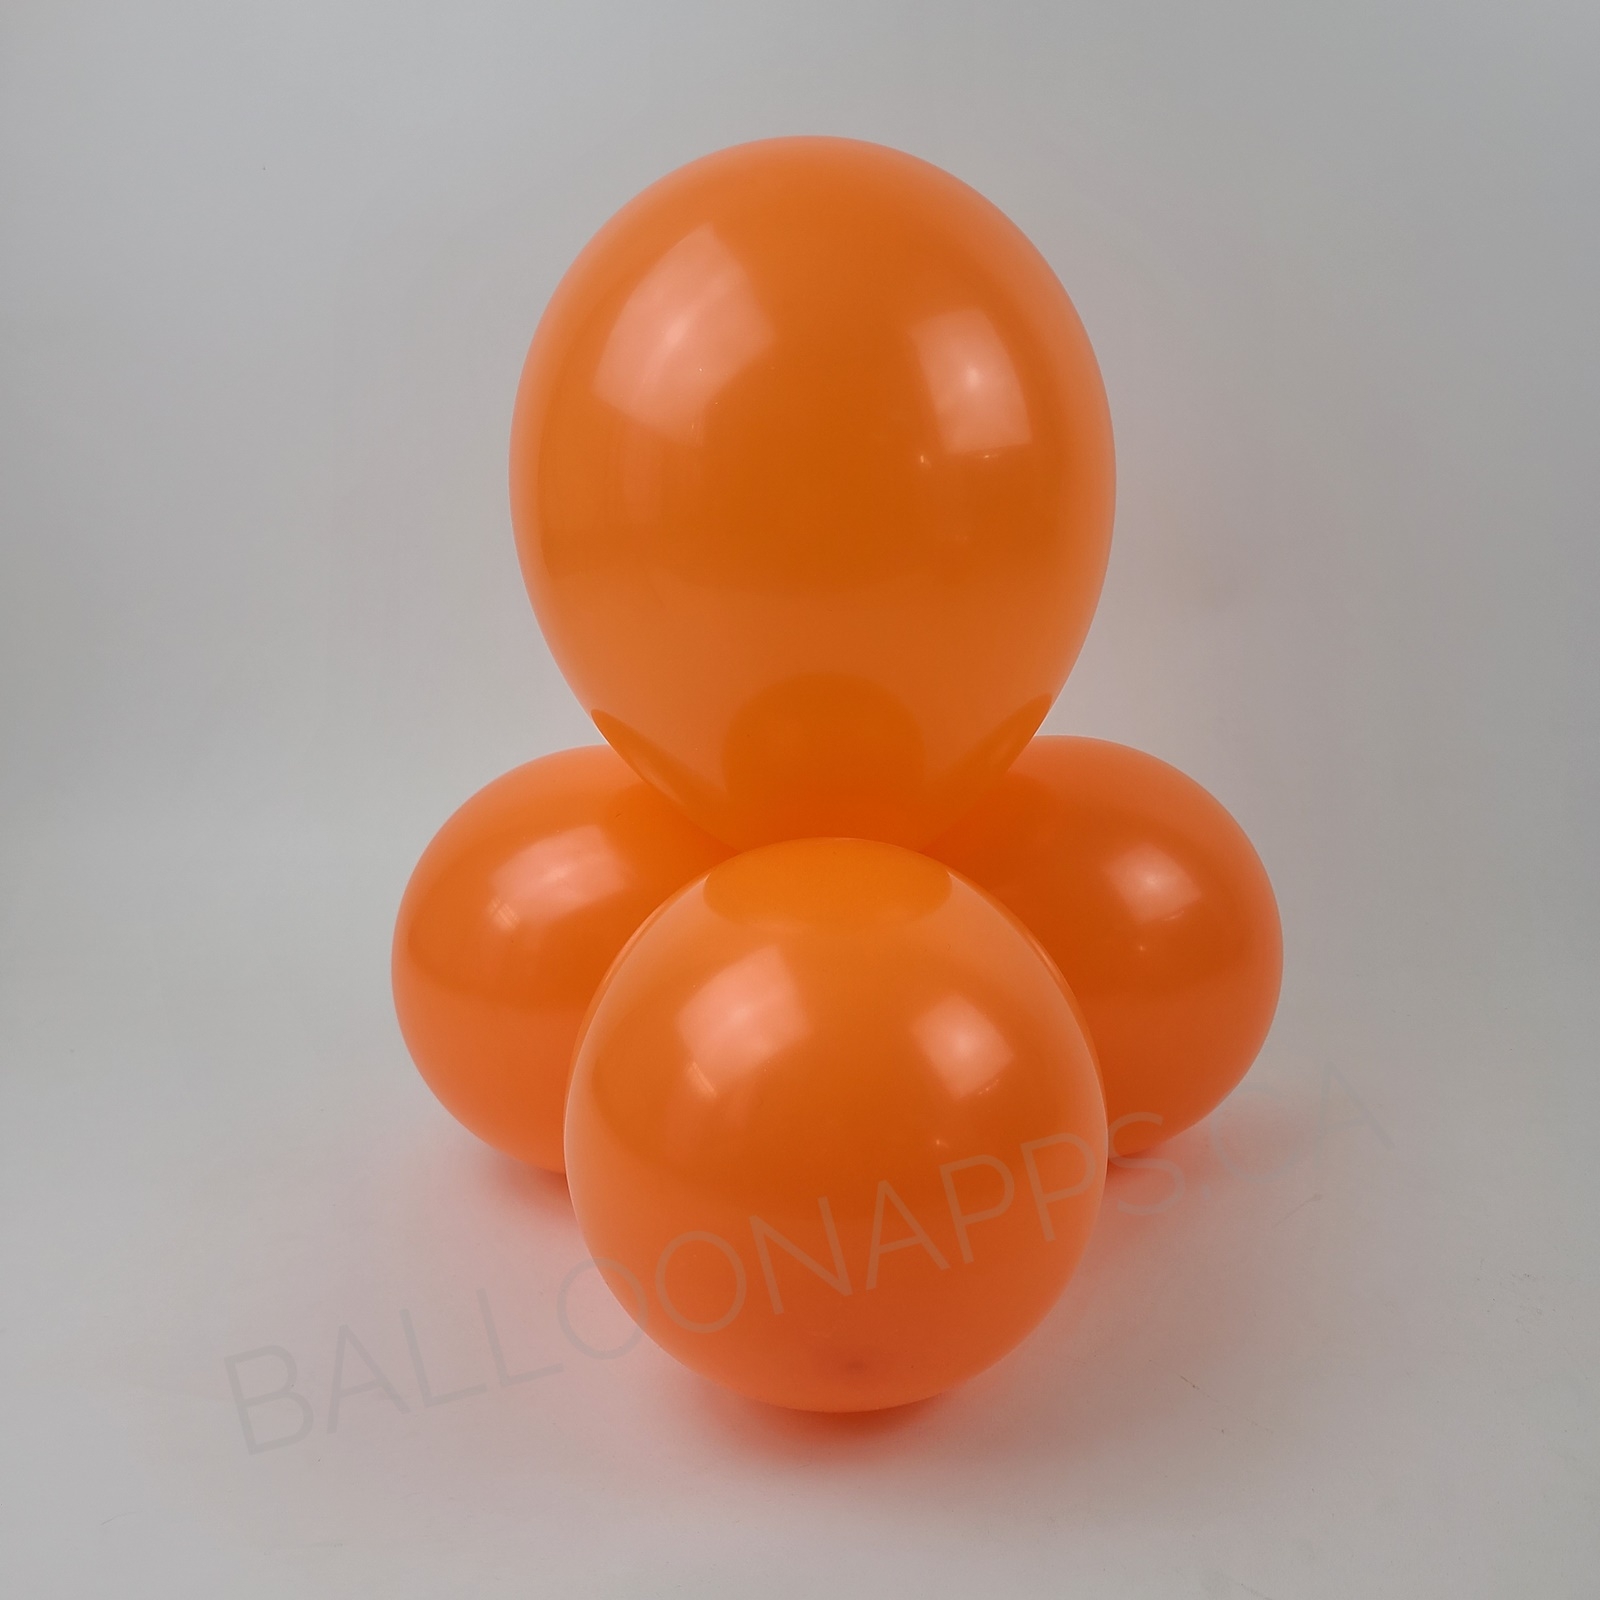 balloon texture TUFTEX (1) 24